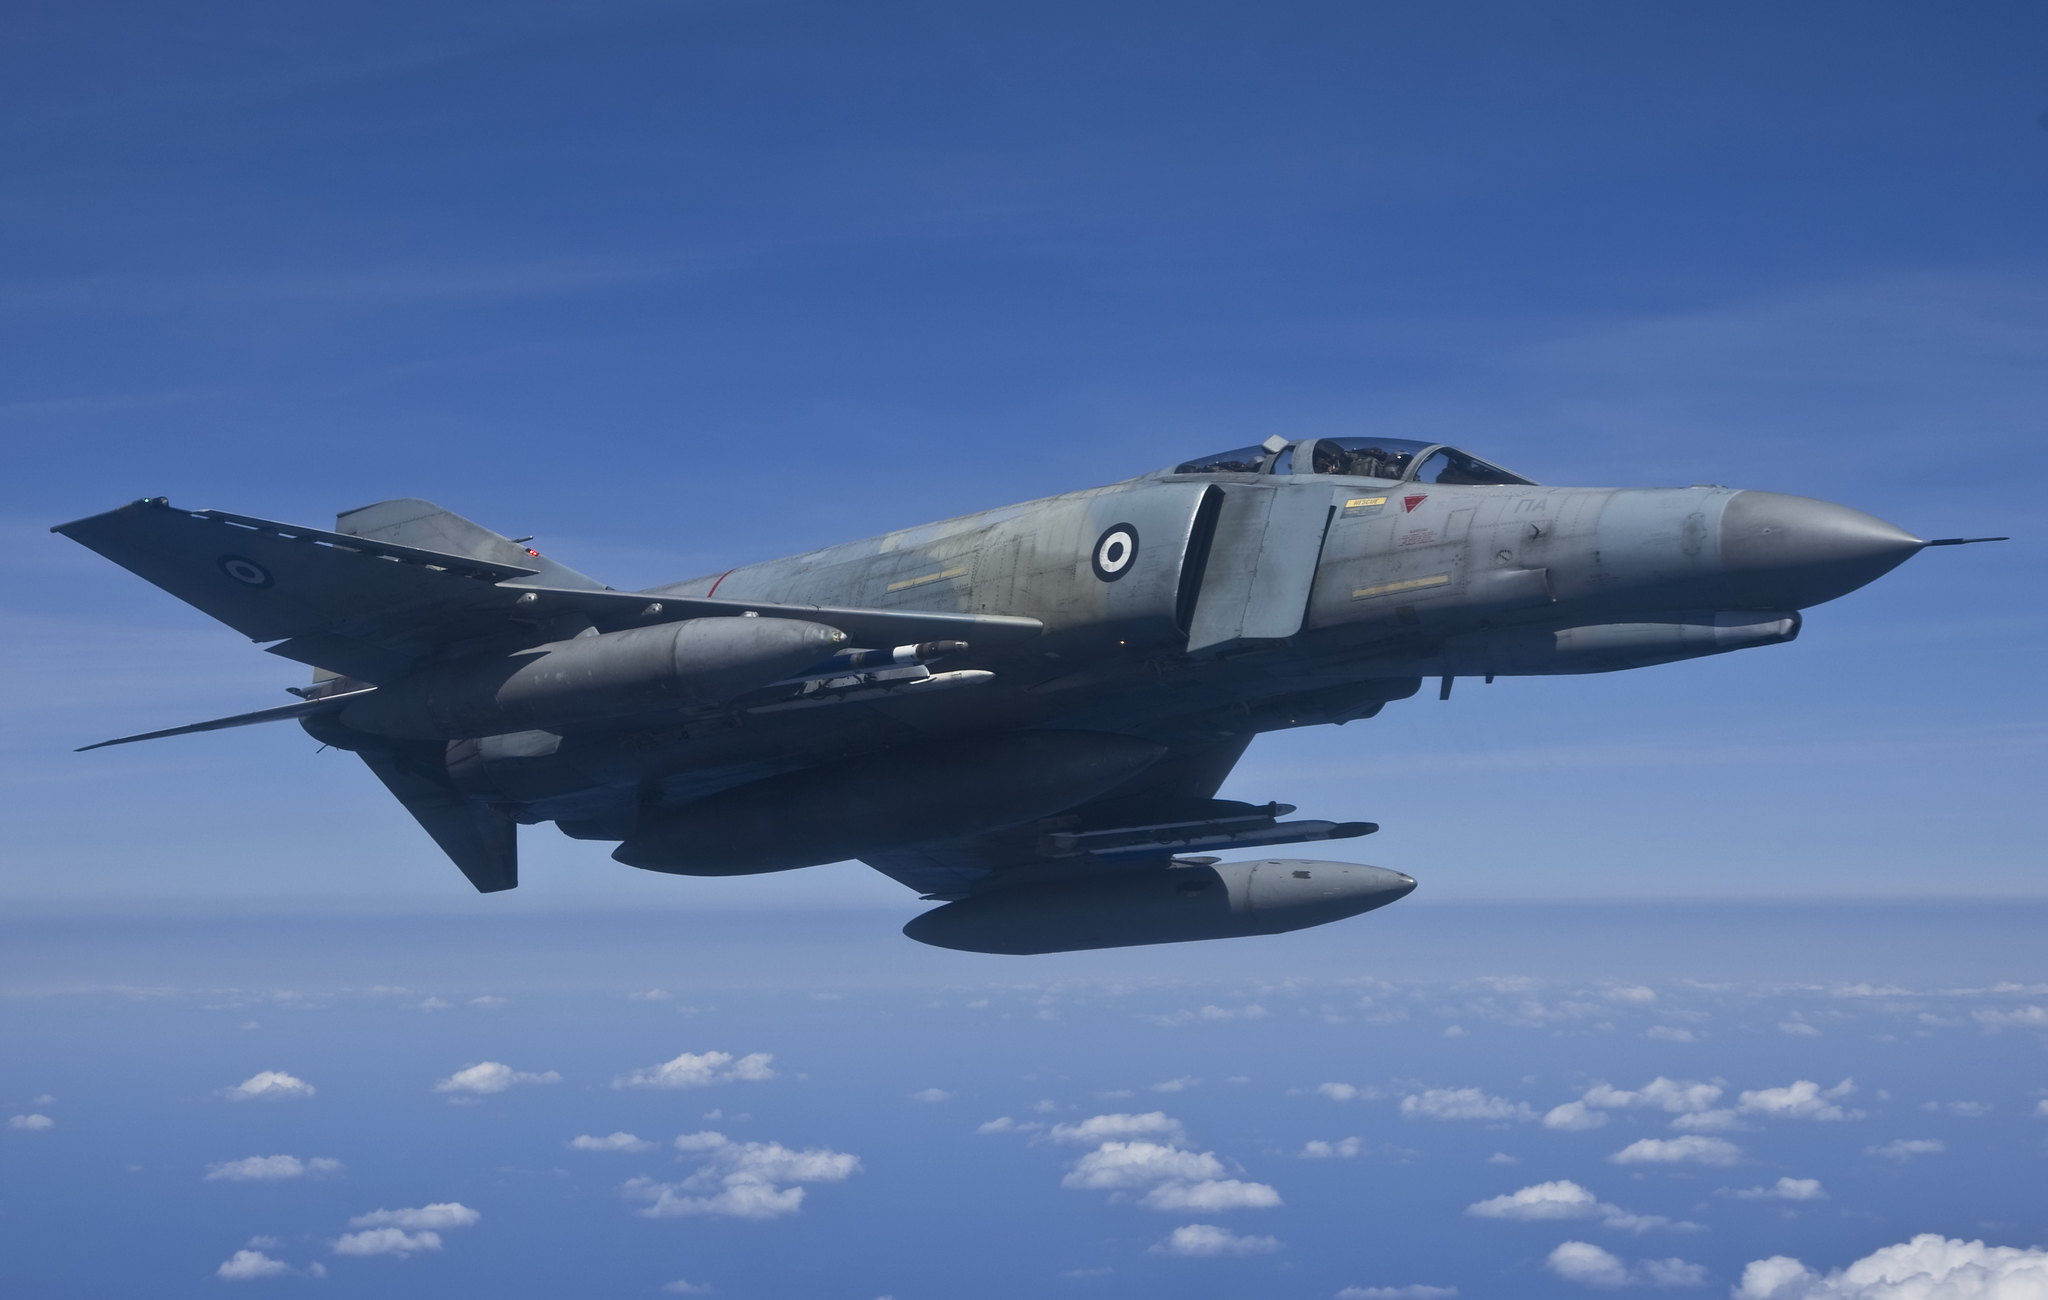 Πτώση μαχητικού της ΠΑ: Οι πιλότοι του Phantom F-4 δεν πρόλαβαν να εκτιναχθούν – Βρέθηκαν τα συντρίμμια